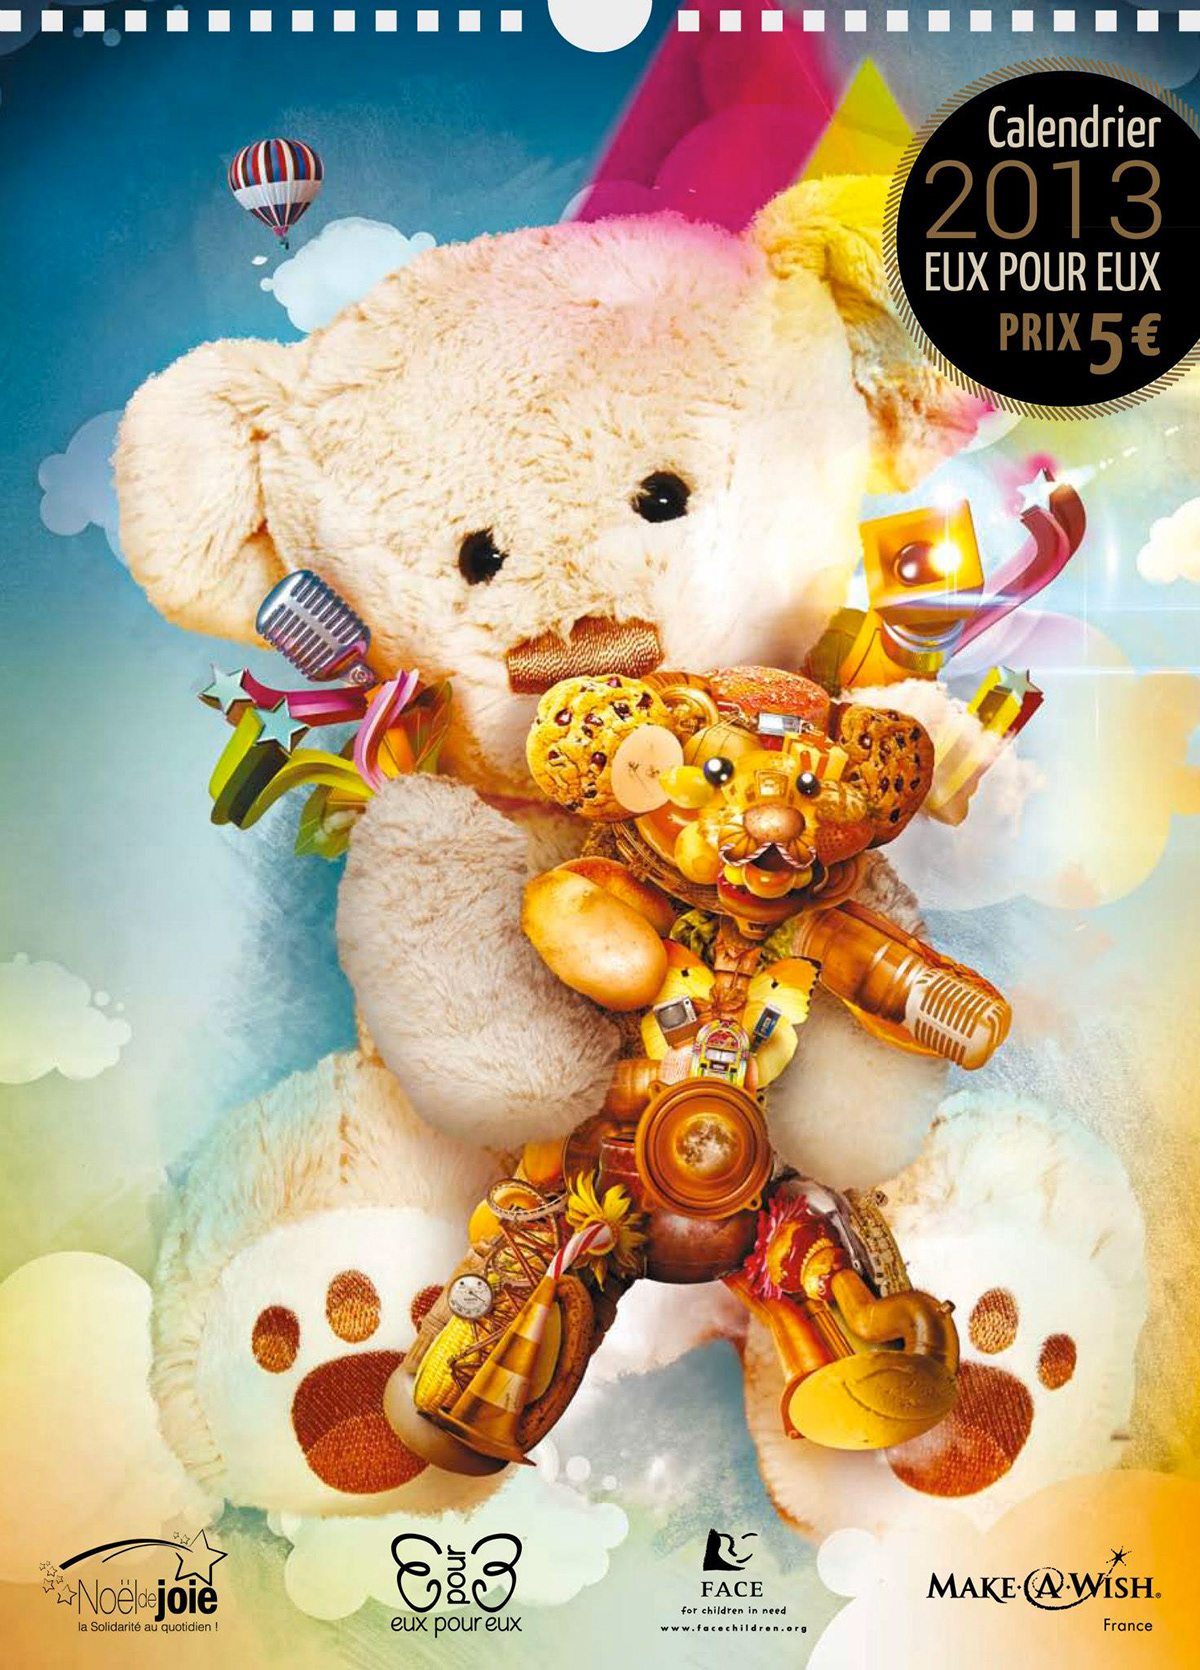 eux charity kids Teddy bear robert palmer Bob calendar calendrier Association